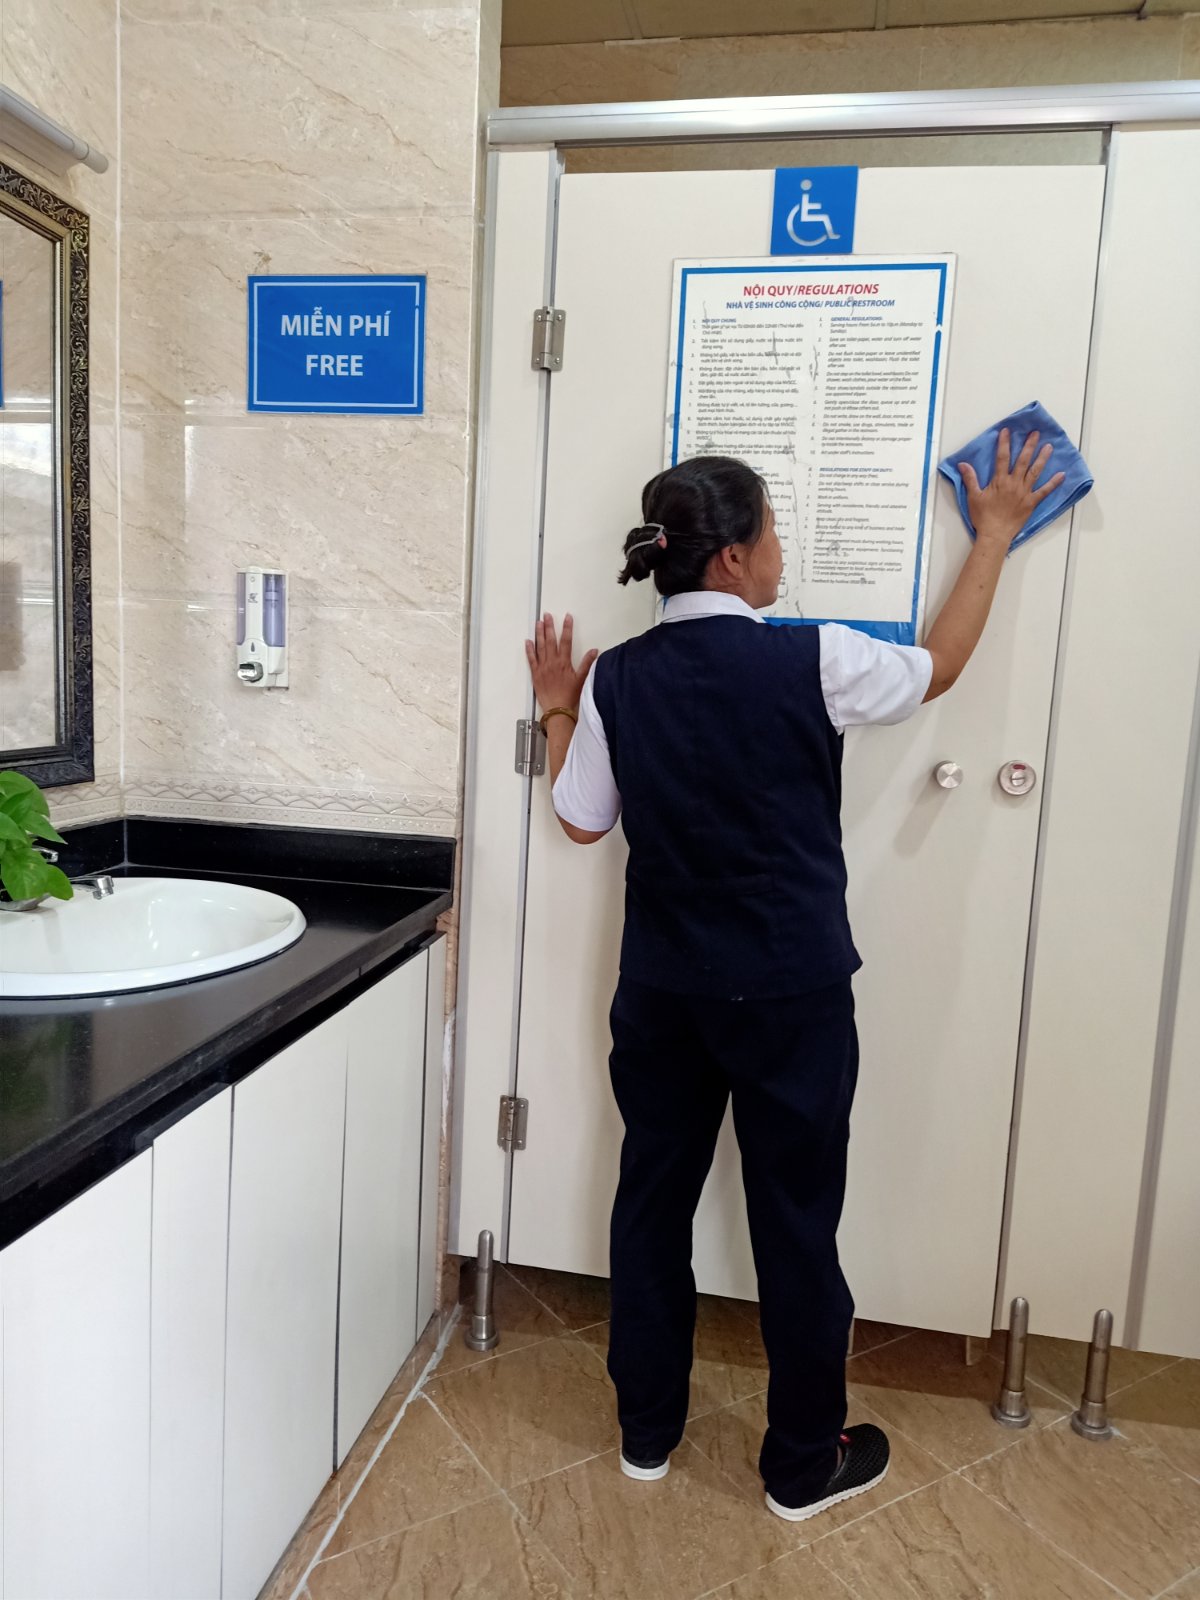 Dịch vụ vệ sinh làm sạch tại Kios ATM Sacombank